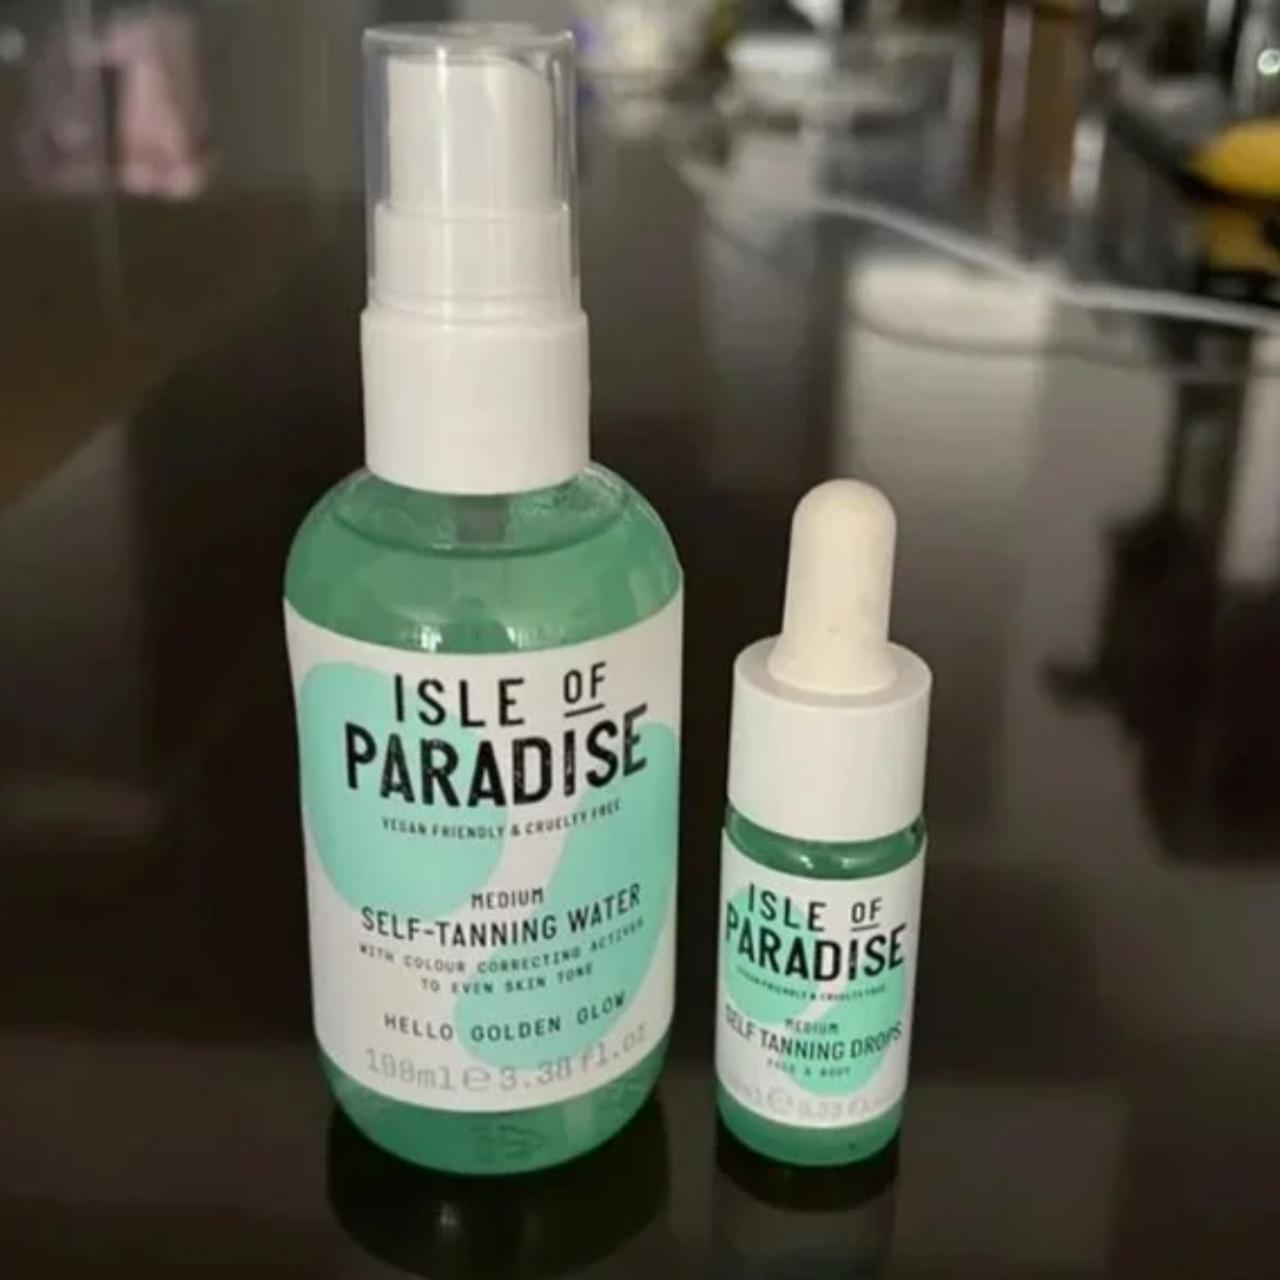 Product Image 1 - NEW Isle of Paradise Self-Tanning